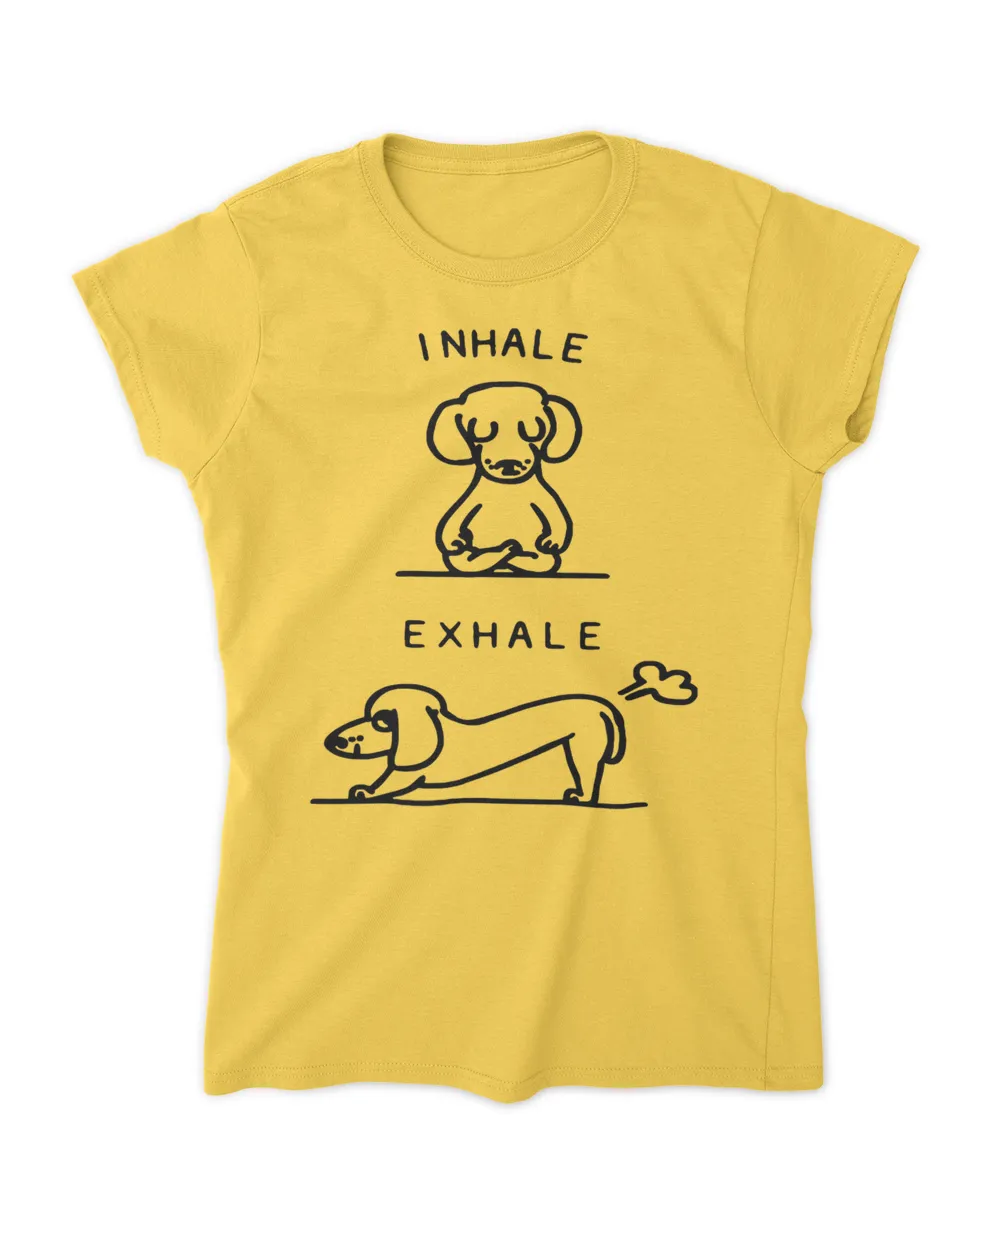 Inhale Exhale Dachshund Funny Yoga Dachshund T-Shirt